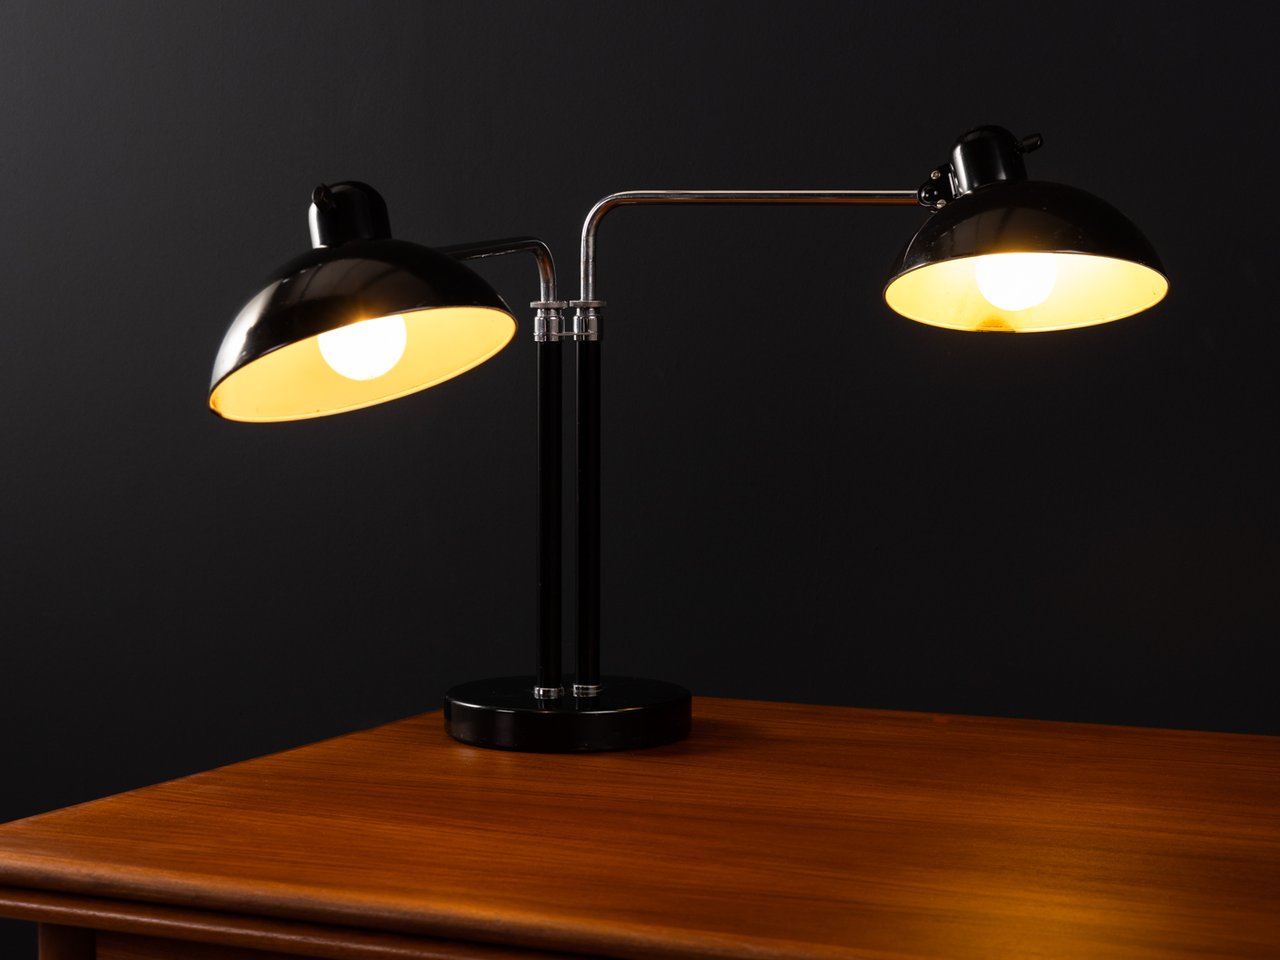 Image 3 of Christian Dell, Kaiser Idell, "6580 Super" table lamp